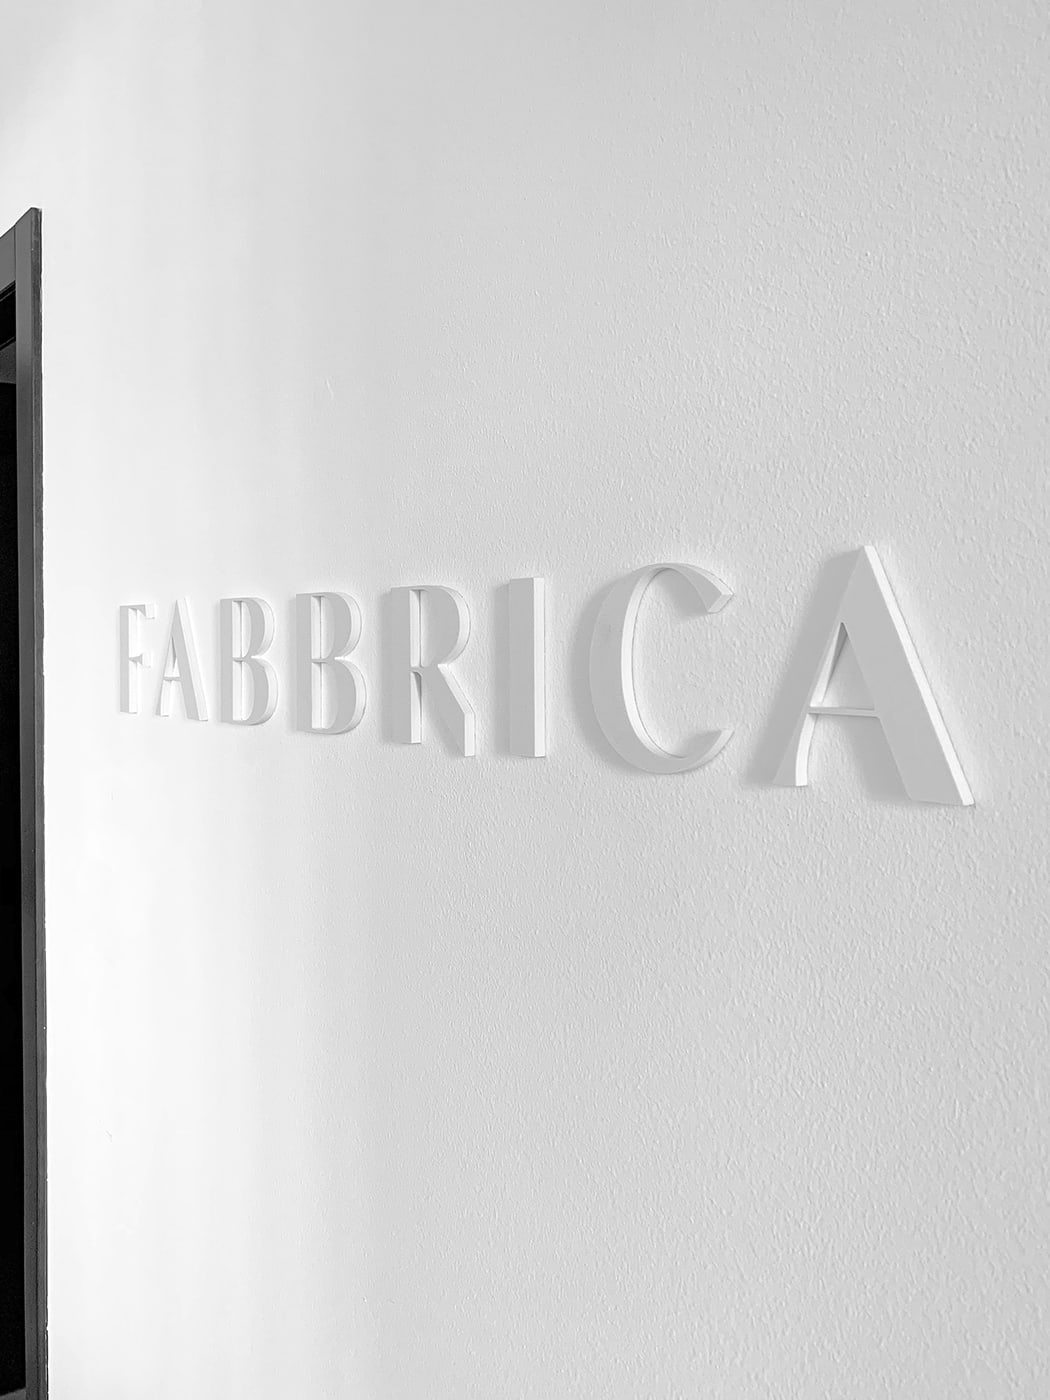 米兰模特经纪公司Fabbrica Milano品牌形象设计